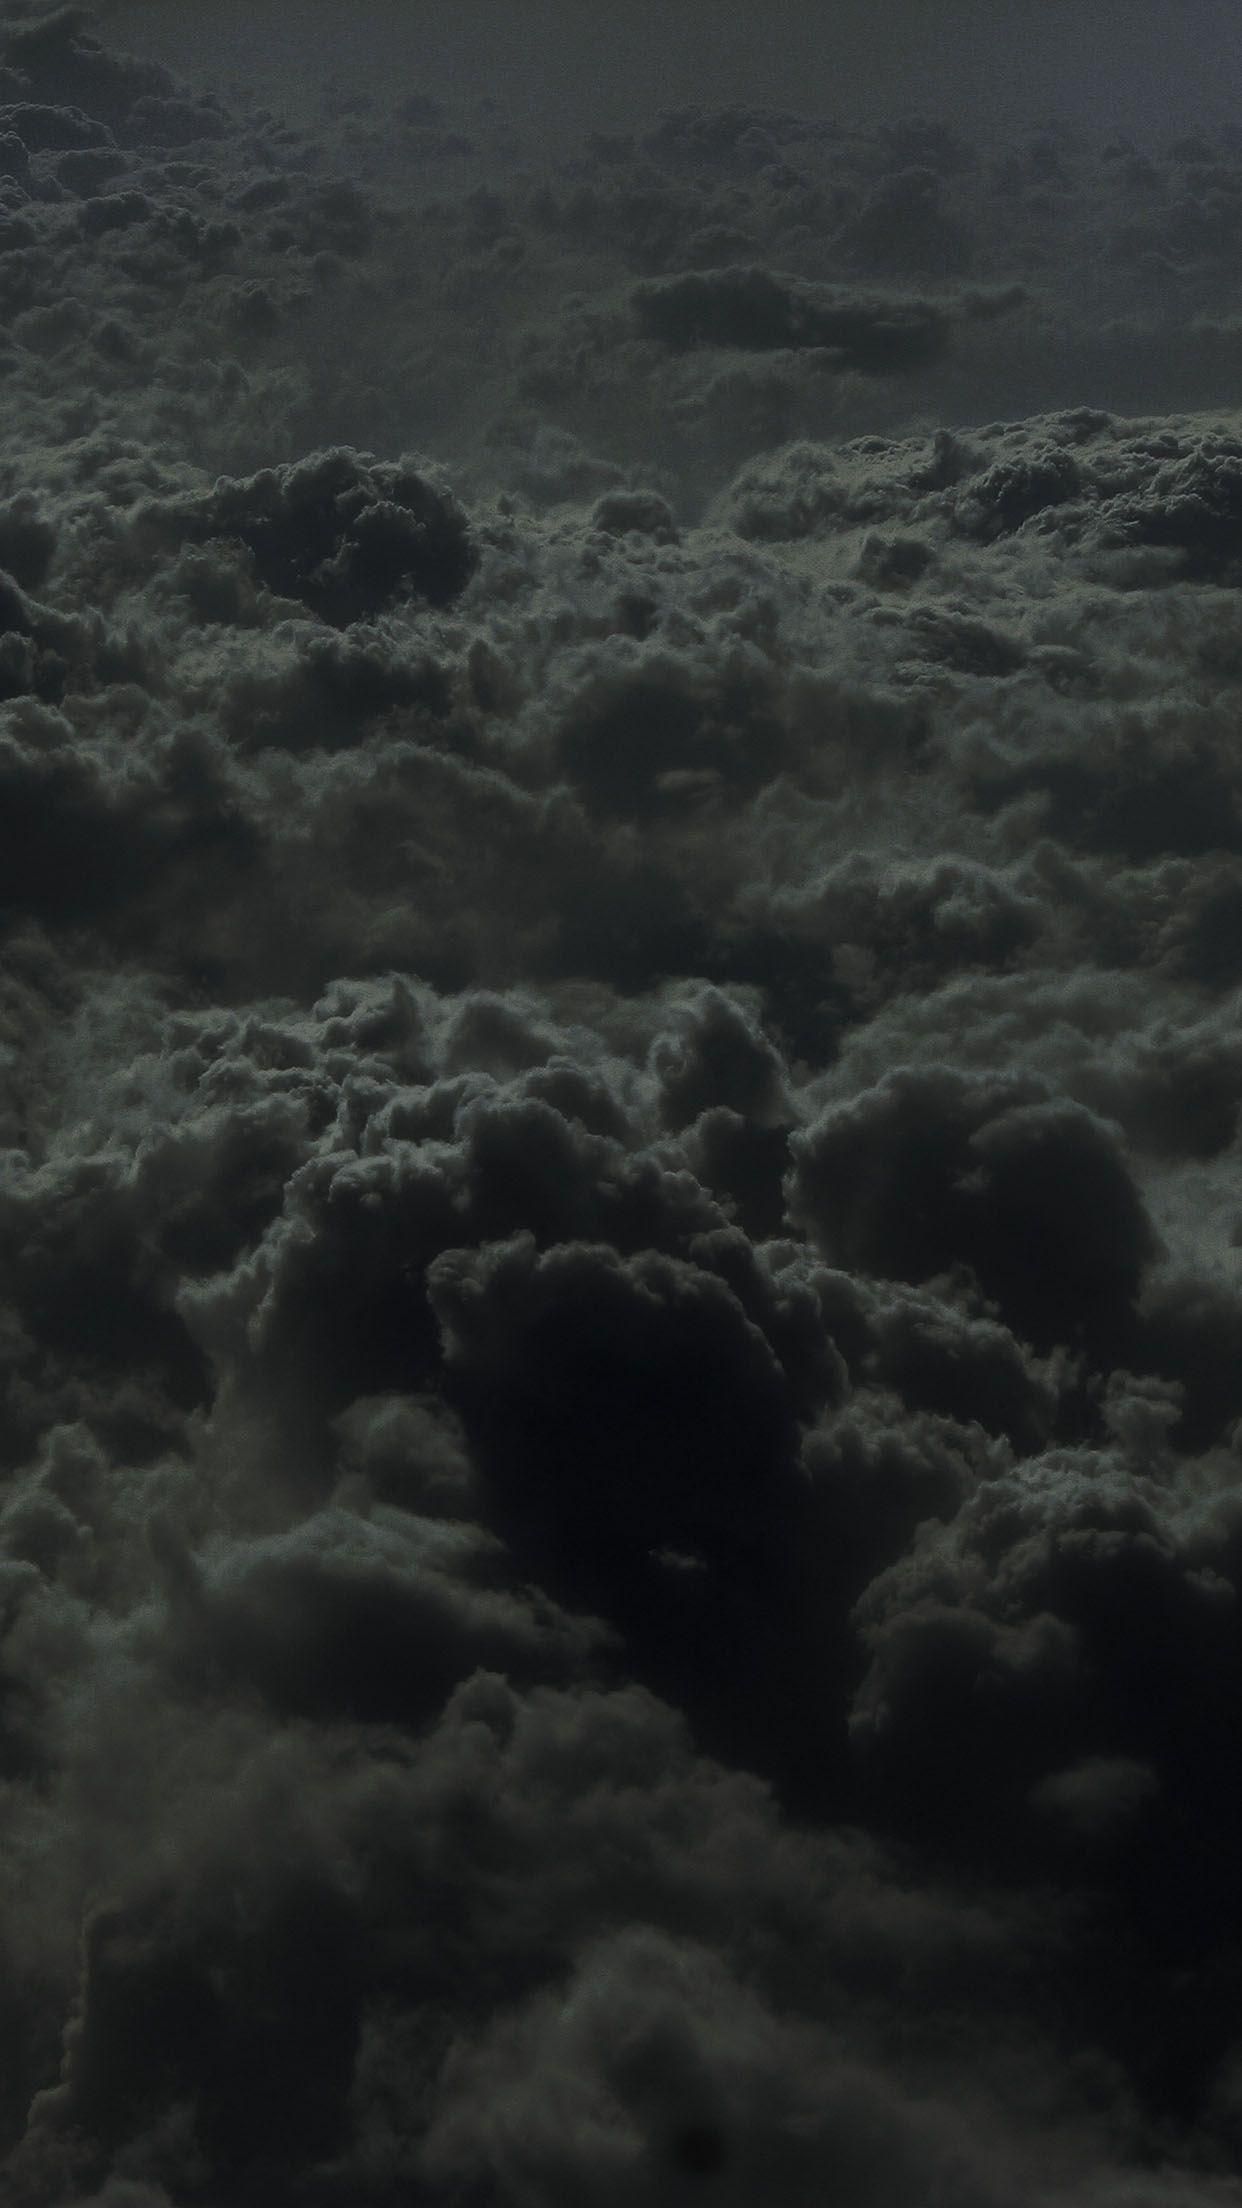 Dark Clouds Wallpaper For Mobile Phones. Cloud wallpaper, Clouds wallpaper iphone, Dark wallpaper iphone